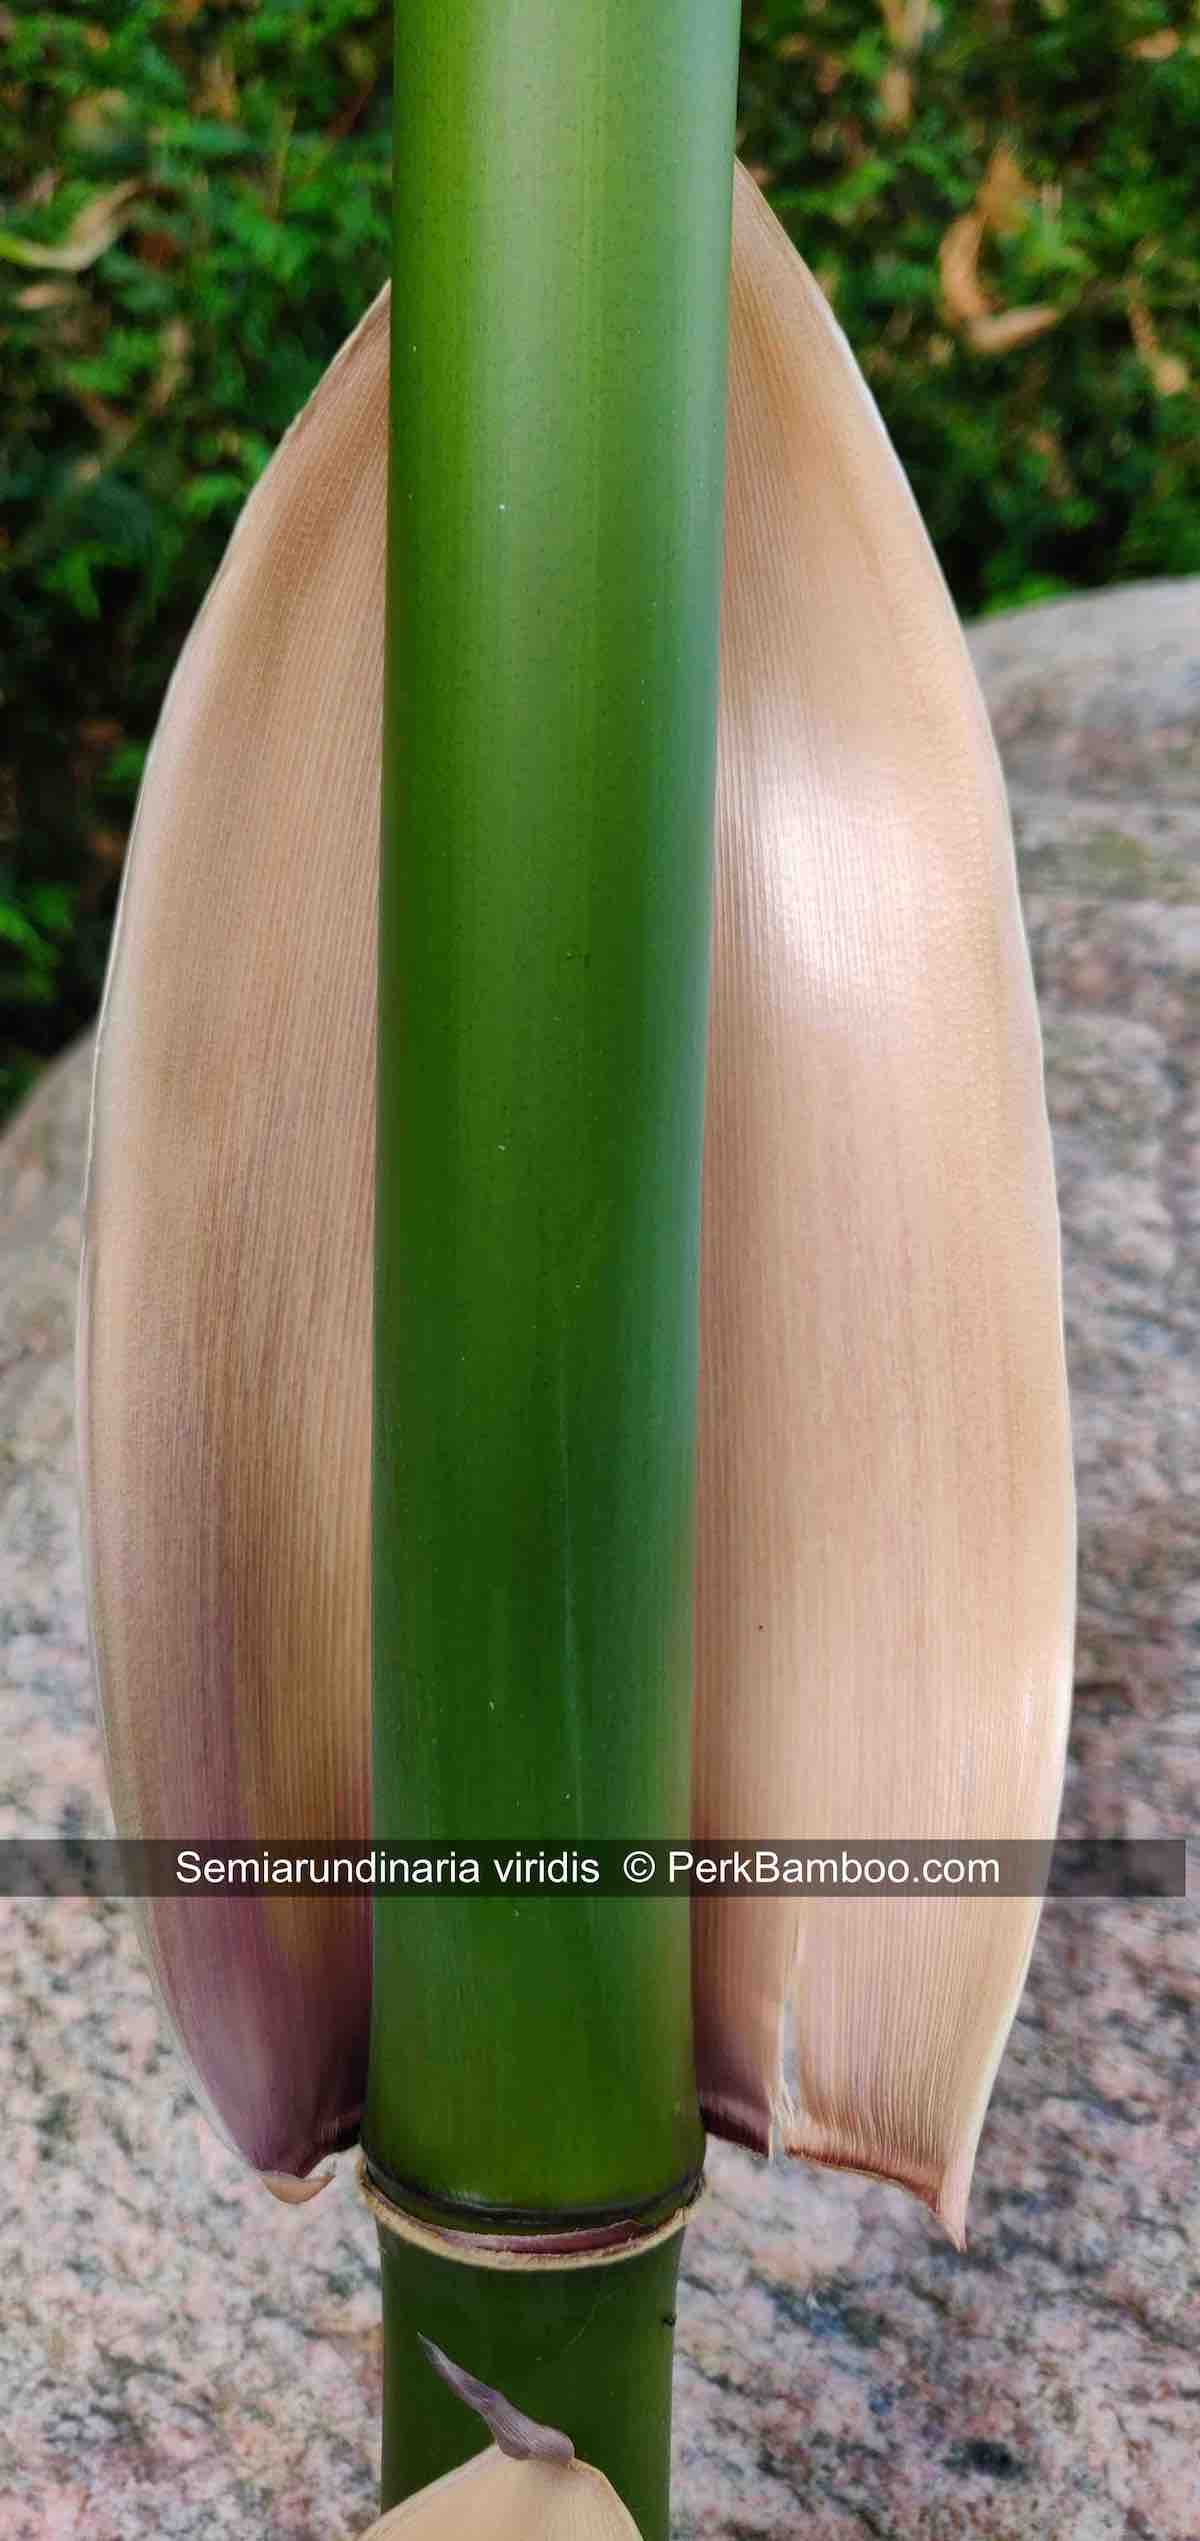 Semiarundinaria viridis 4 PerkBamboo com